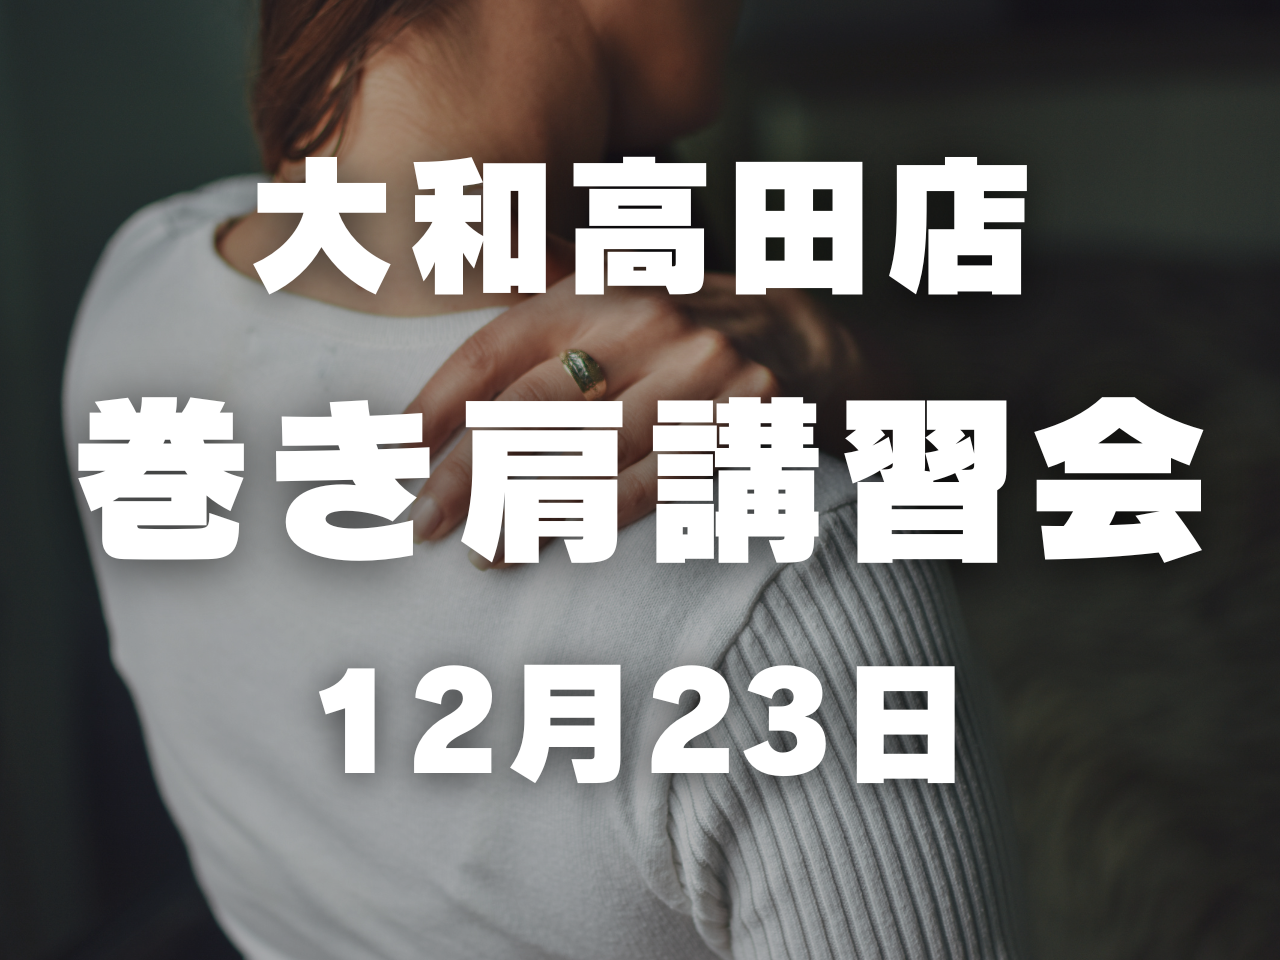 ボクノジム大和高田店にて「巻き肩改善講習会」を開催します。